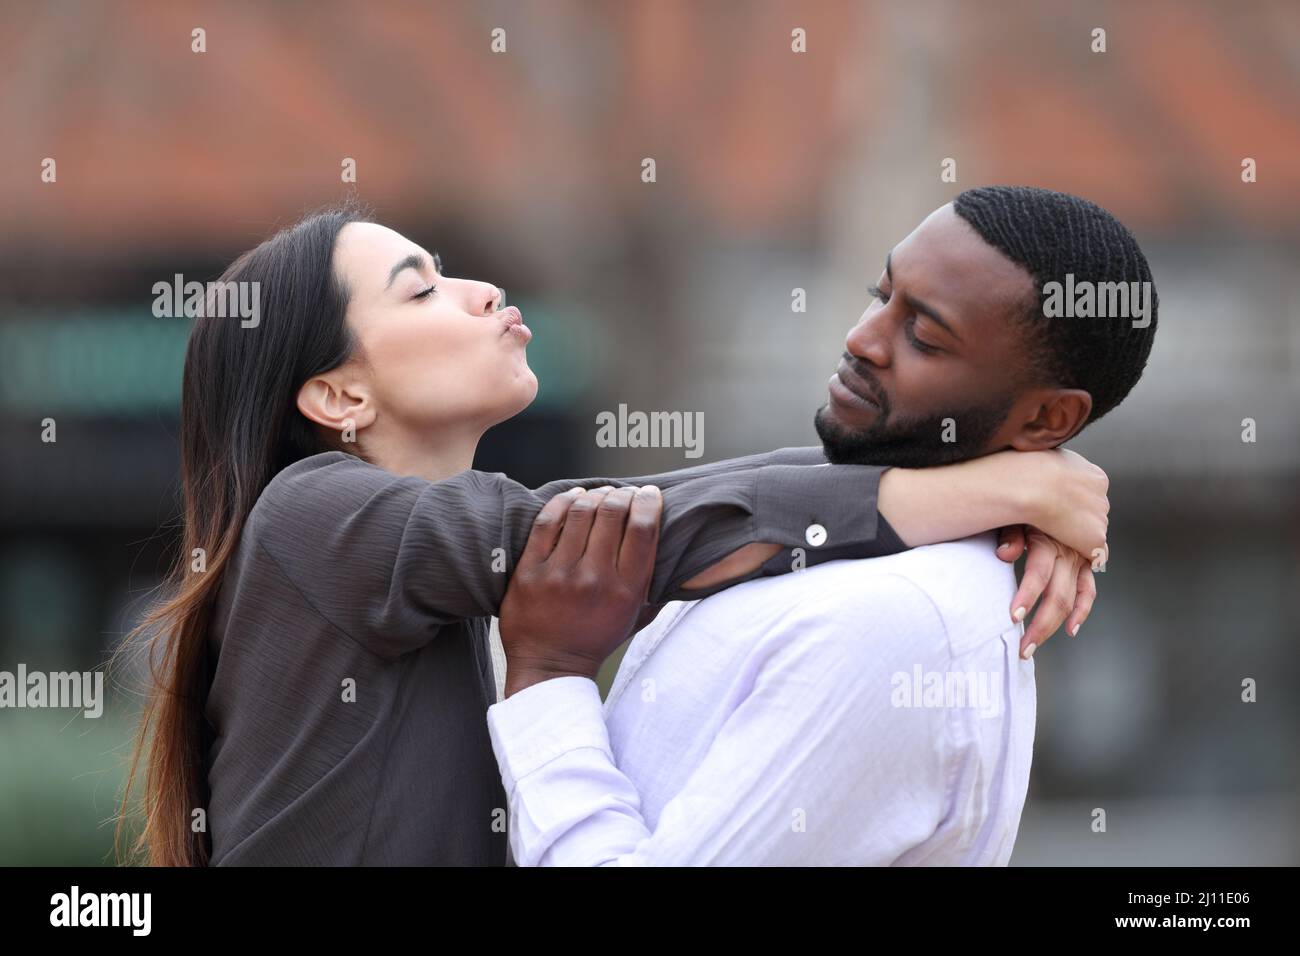 Vue latérale portrait d'une femme obsédée essayant d'embrasser un homme à la peau noire qui la rejette dans la rue Banque D'Images